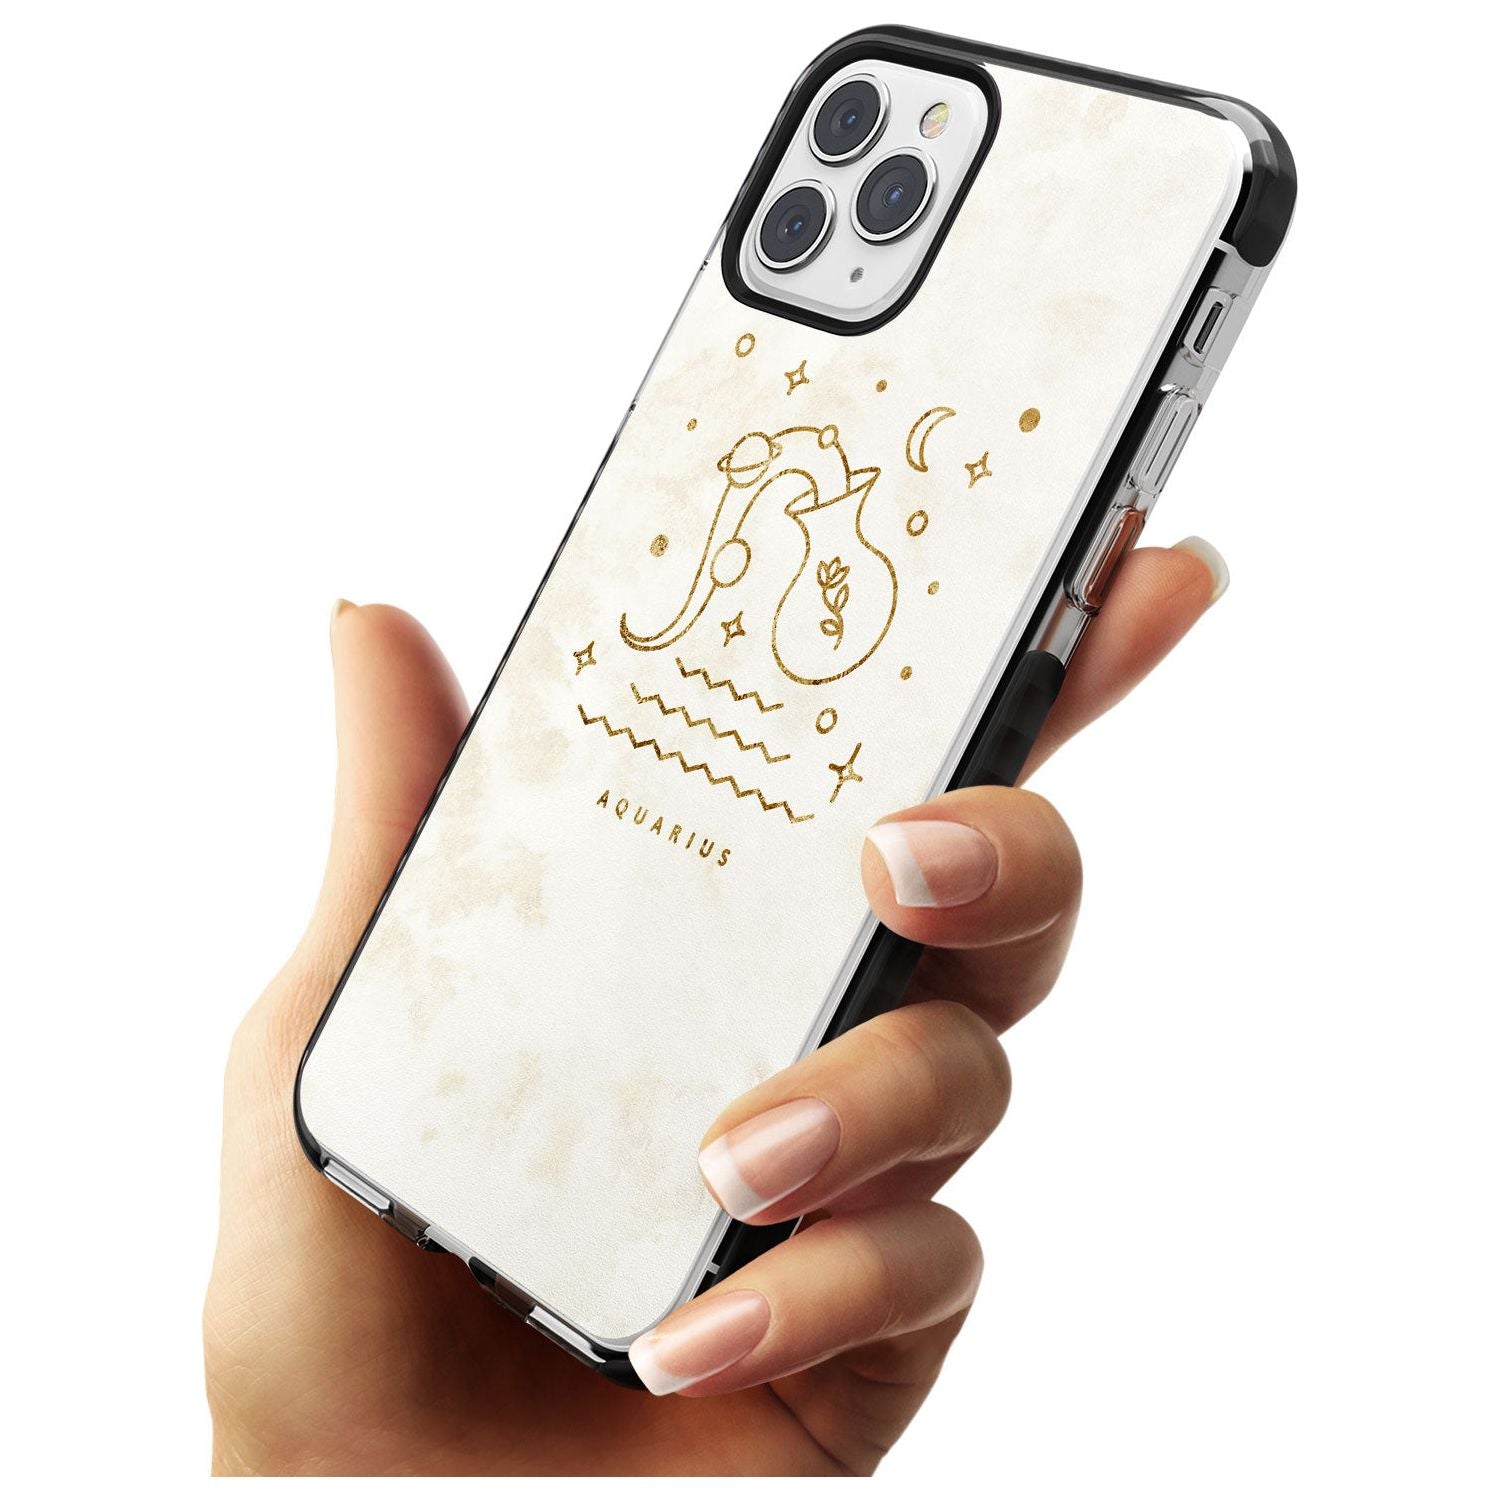 Aquarius Emblem - Solid Gold Marbled Design Black Impact Phone Case for iPhone 11 Pro Max